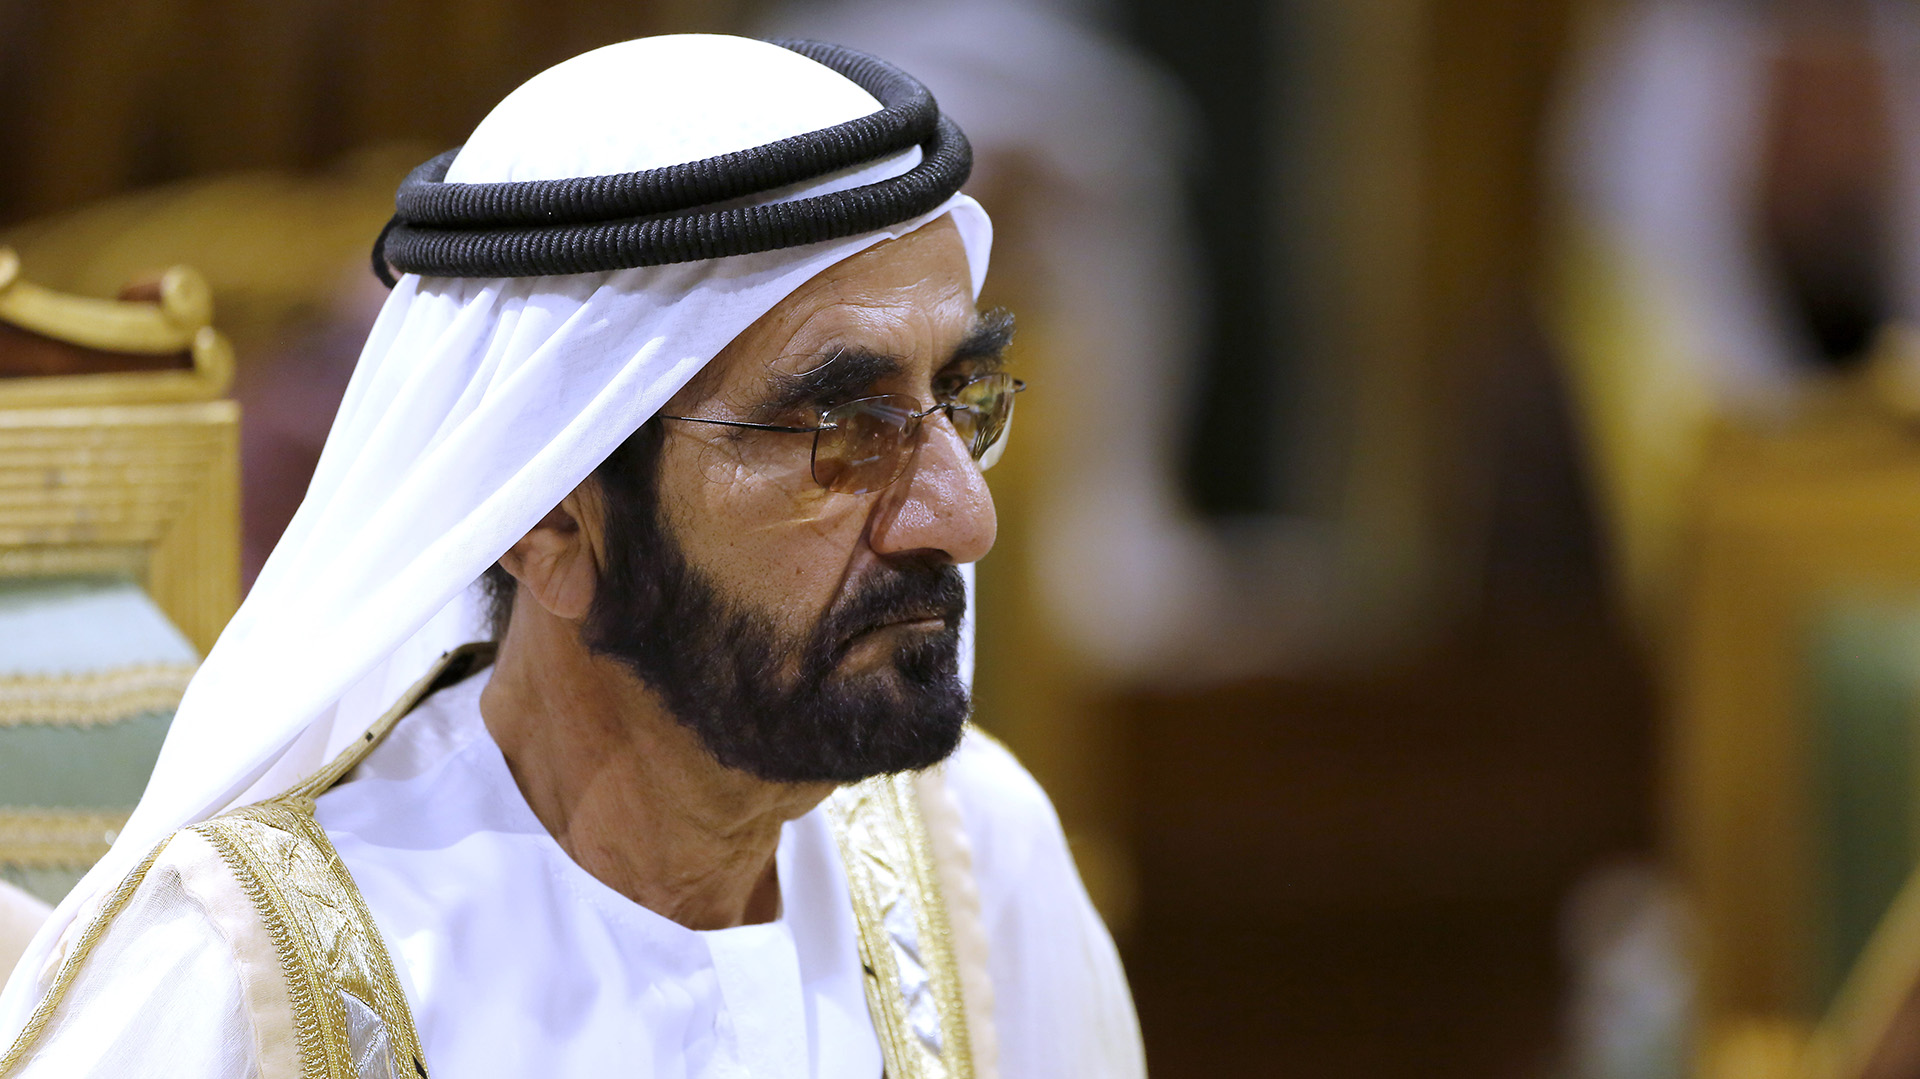 El sultán de Dubai, Mohammed bin Rashid al-Maktoum, no se ha pronunciado respecto al comunicado de su hija (FOTO: AP)